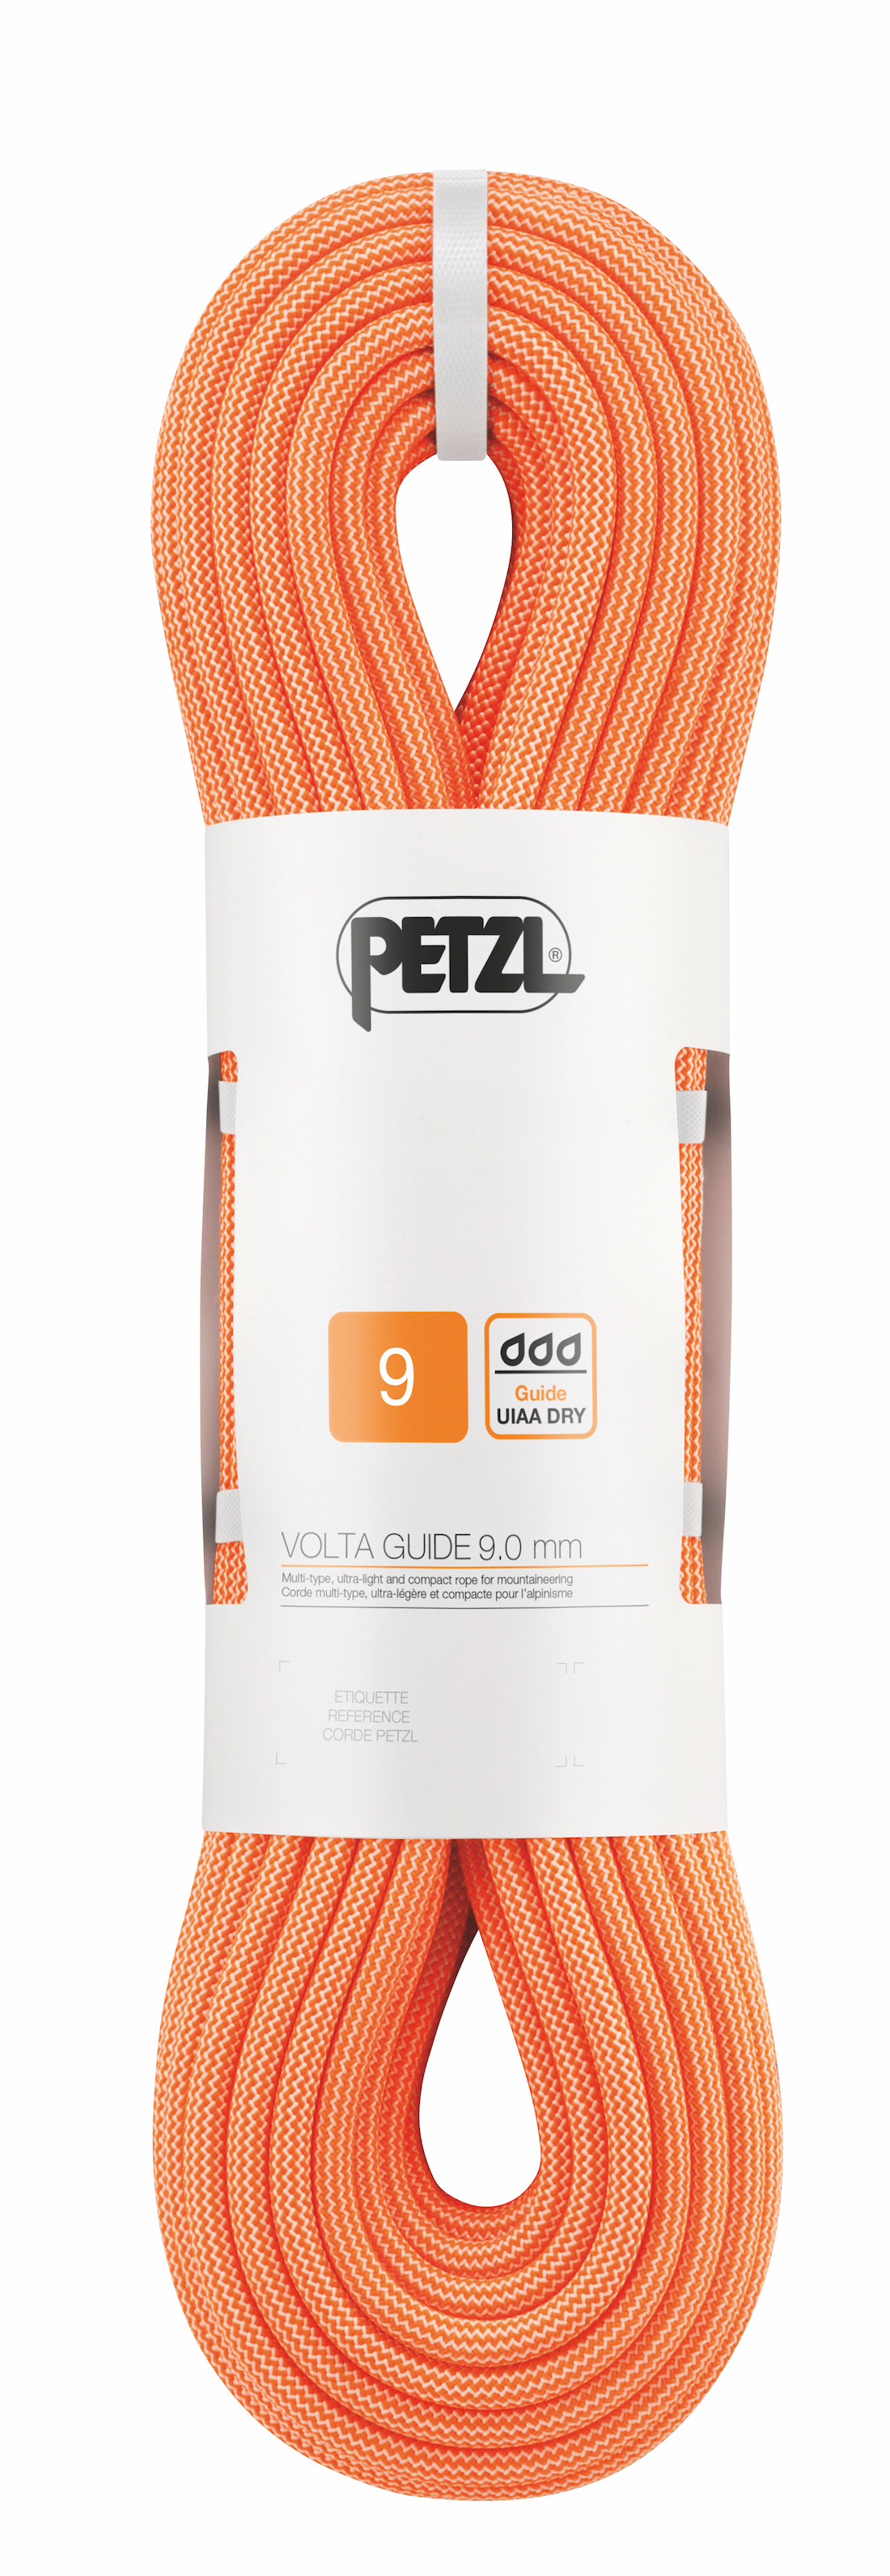 Petzl Volta Guide 9 mm x 60 m - Corde